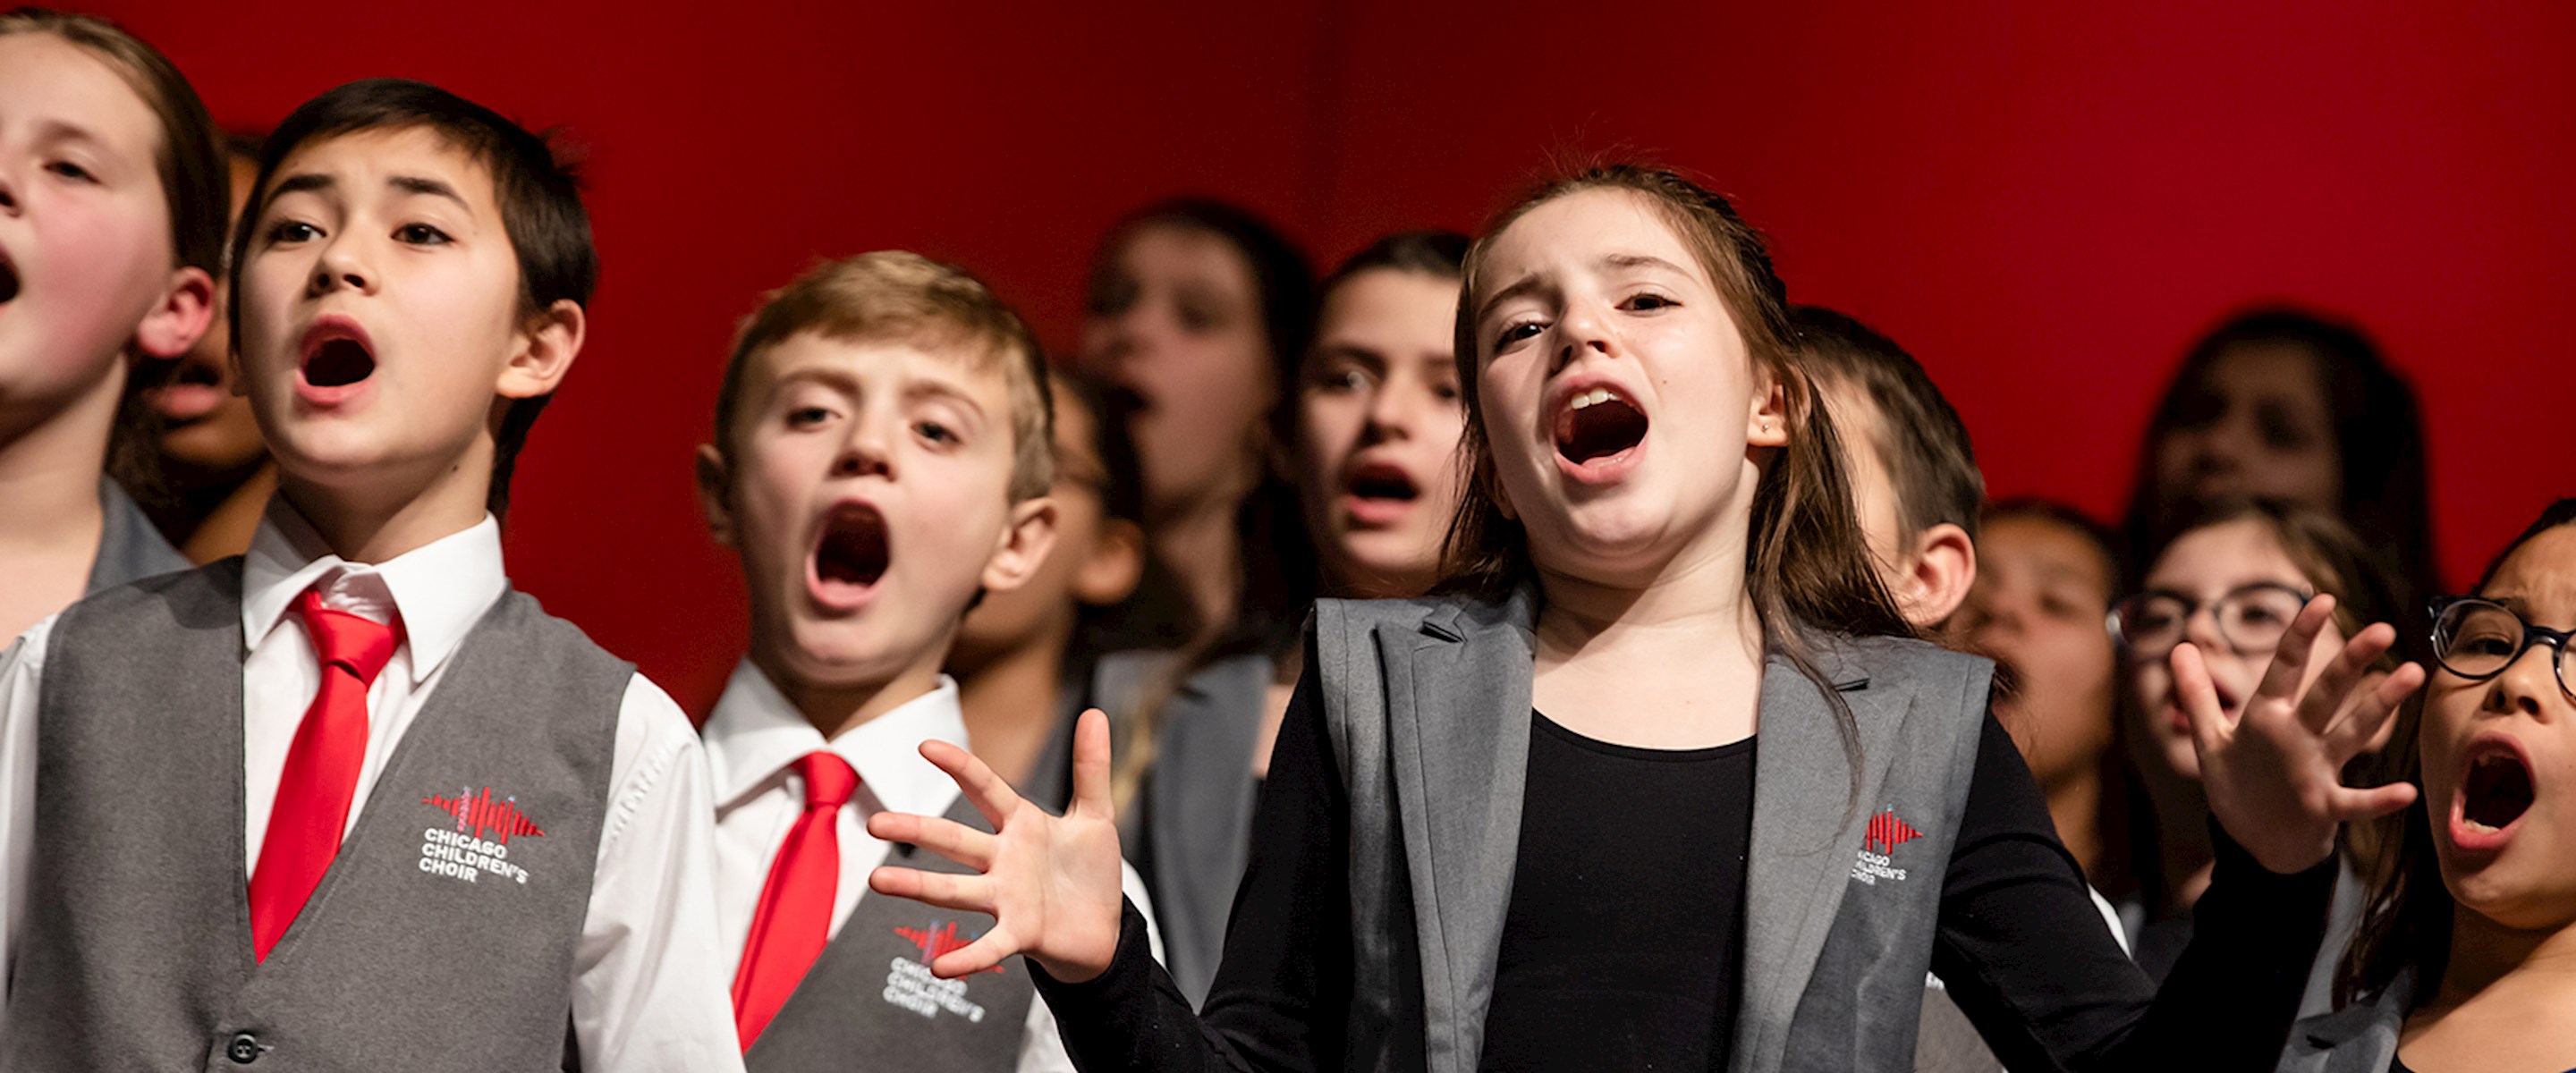 Children from the Chicago Children's Choir singing